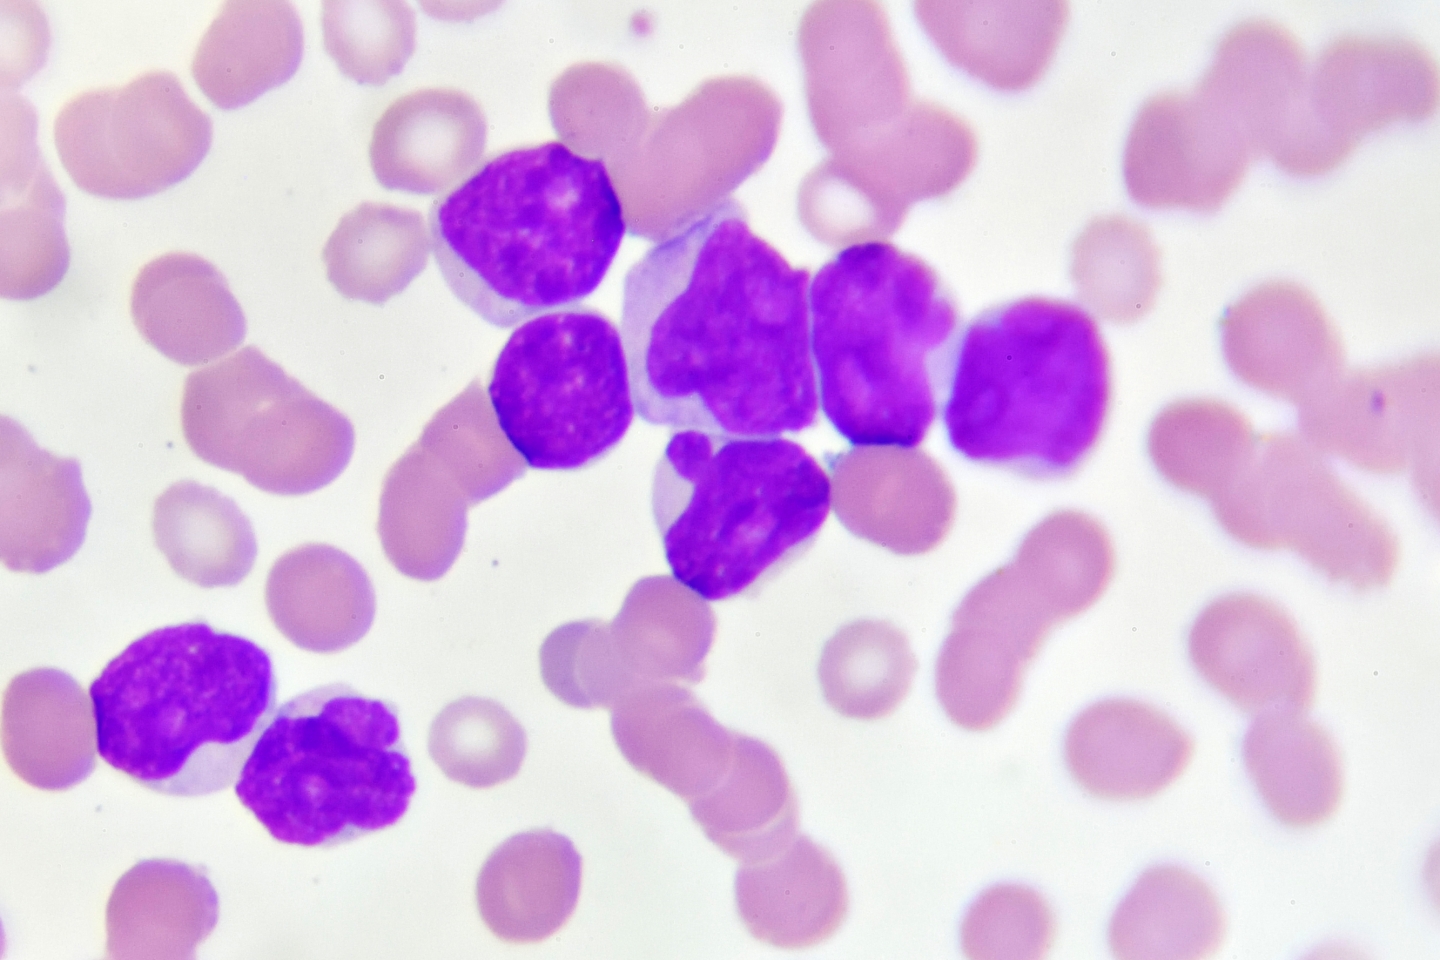 Acute myeloid leukemia cells under a microscope